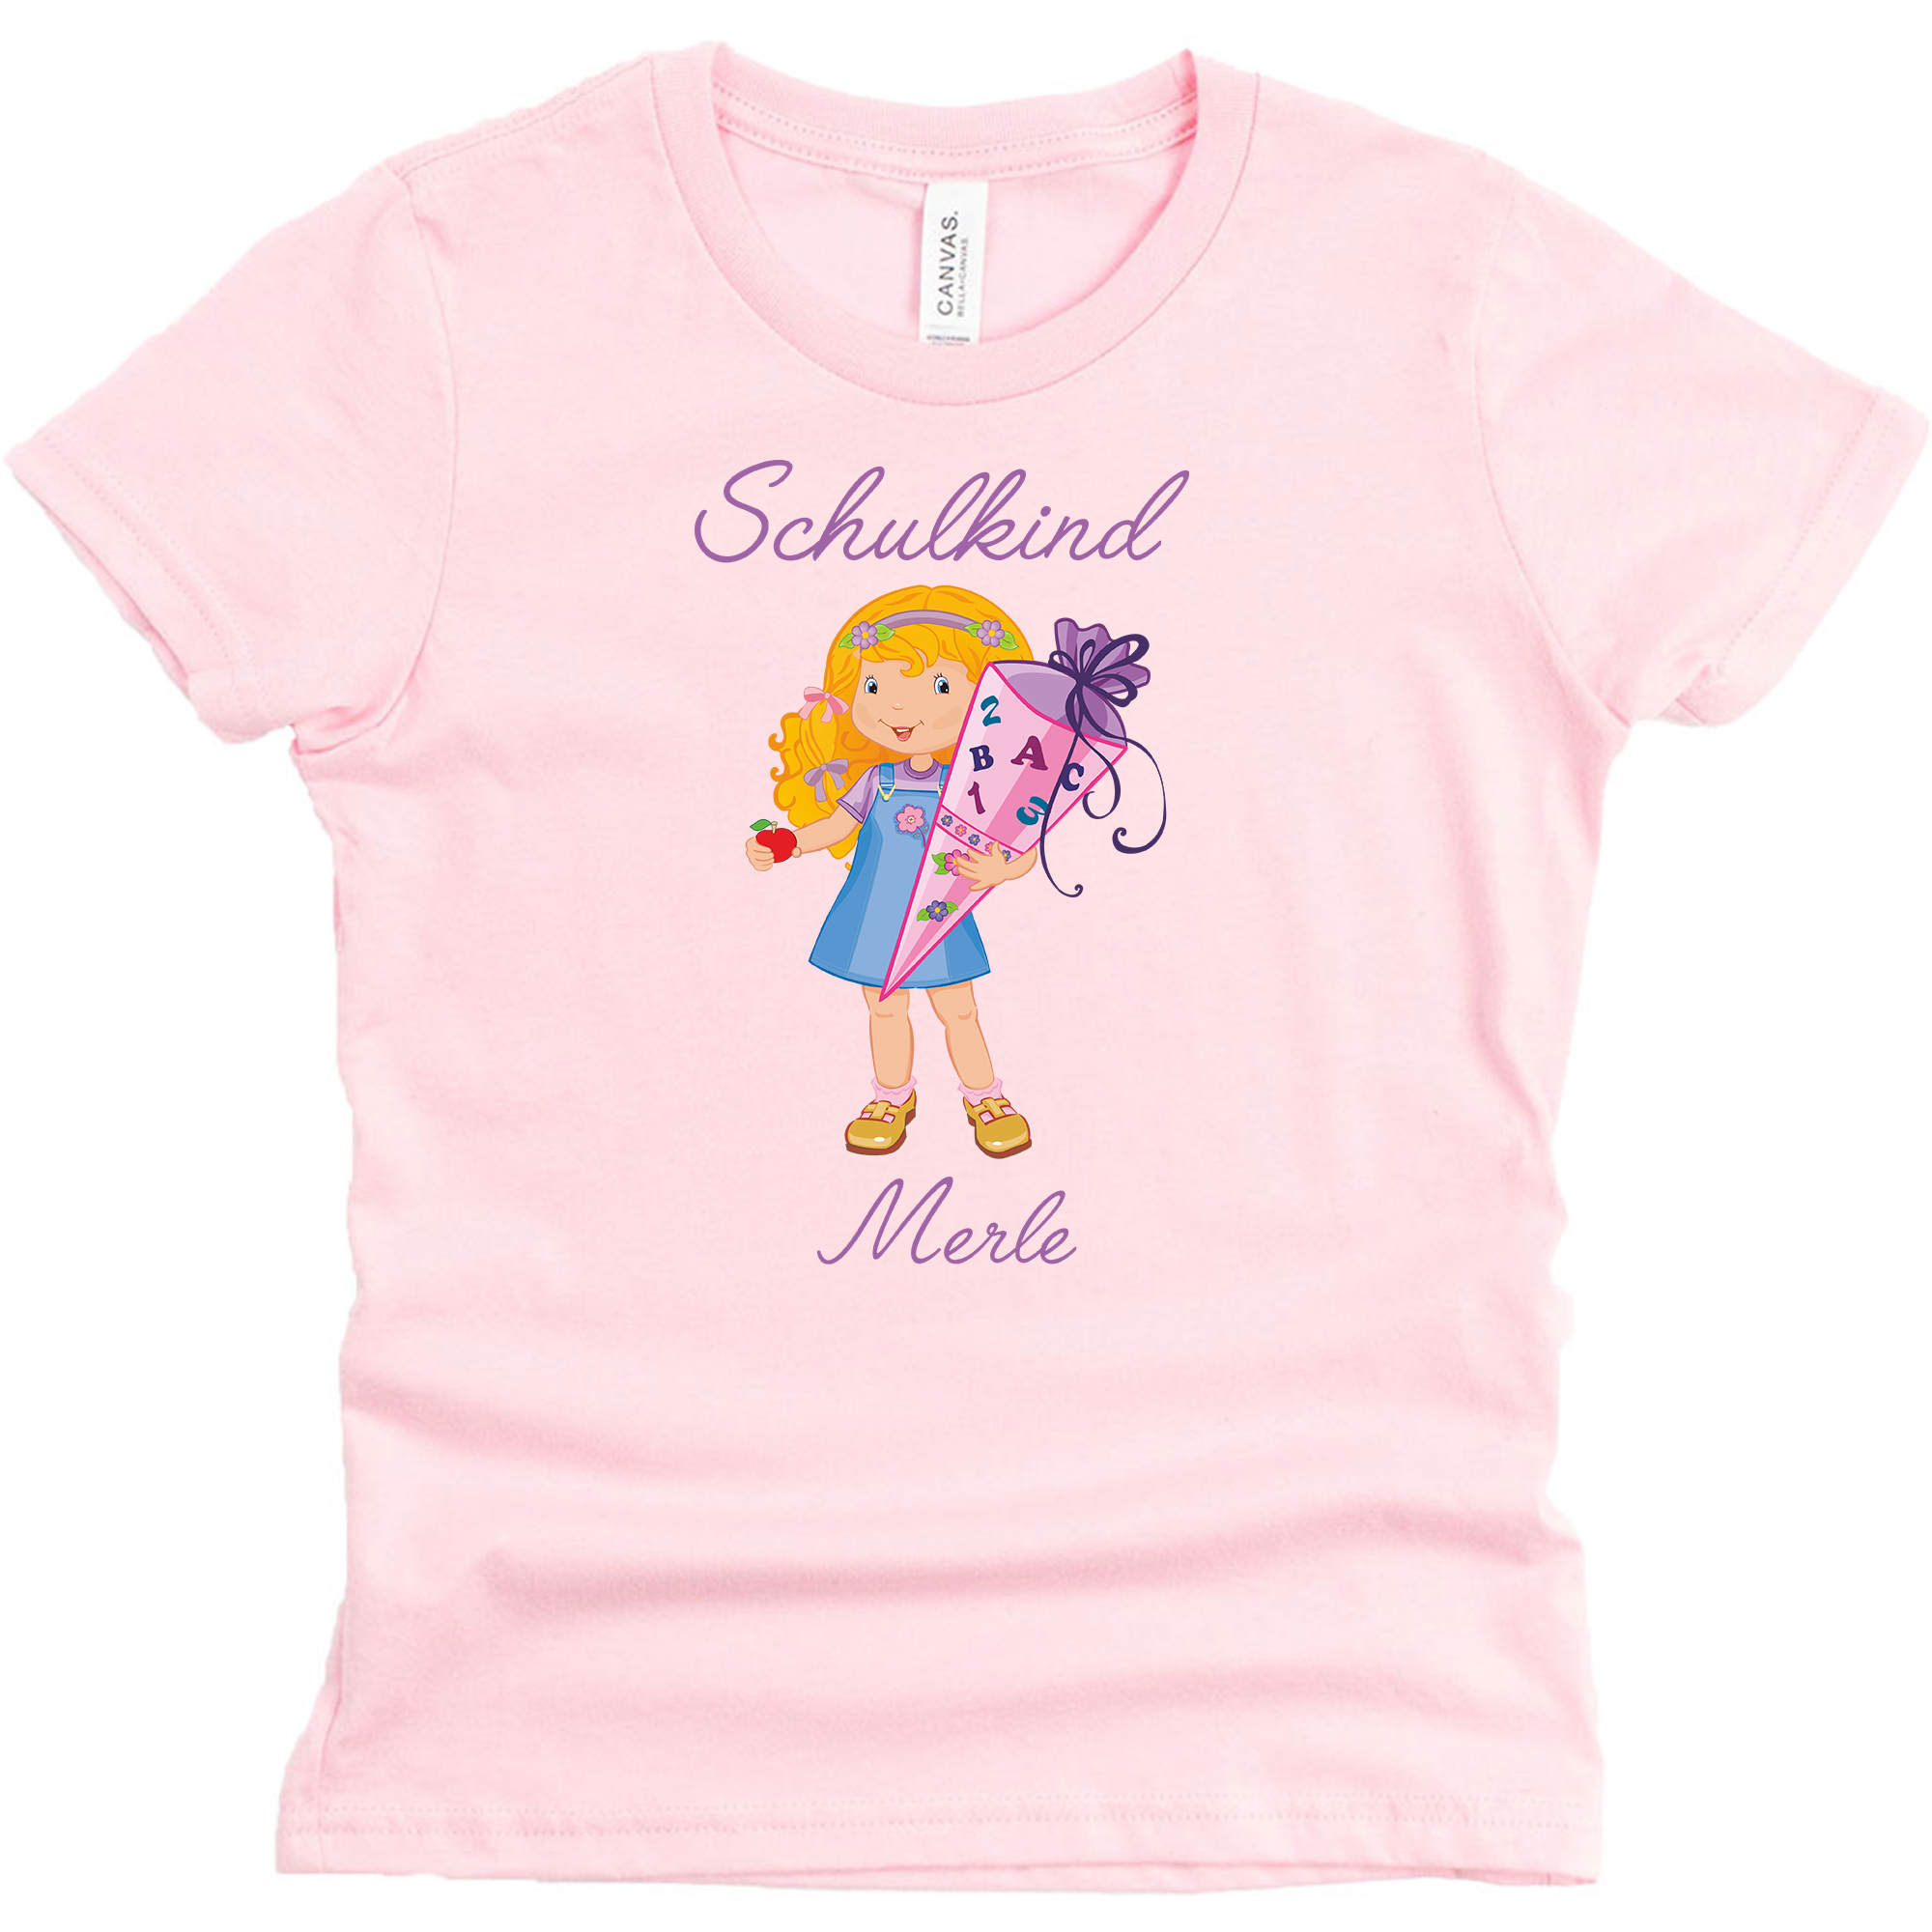 Schulanfangsshirt in rosa mit Name und Motiv Mädchen blond